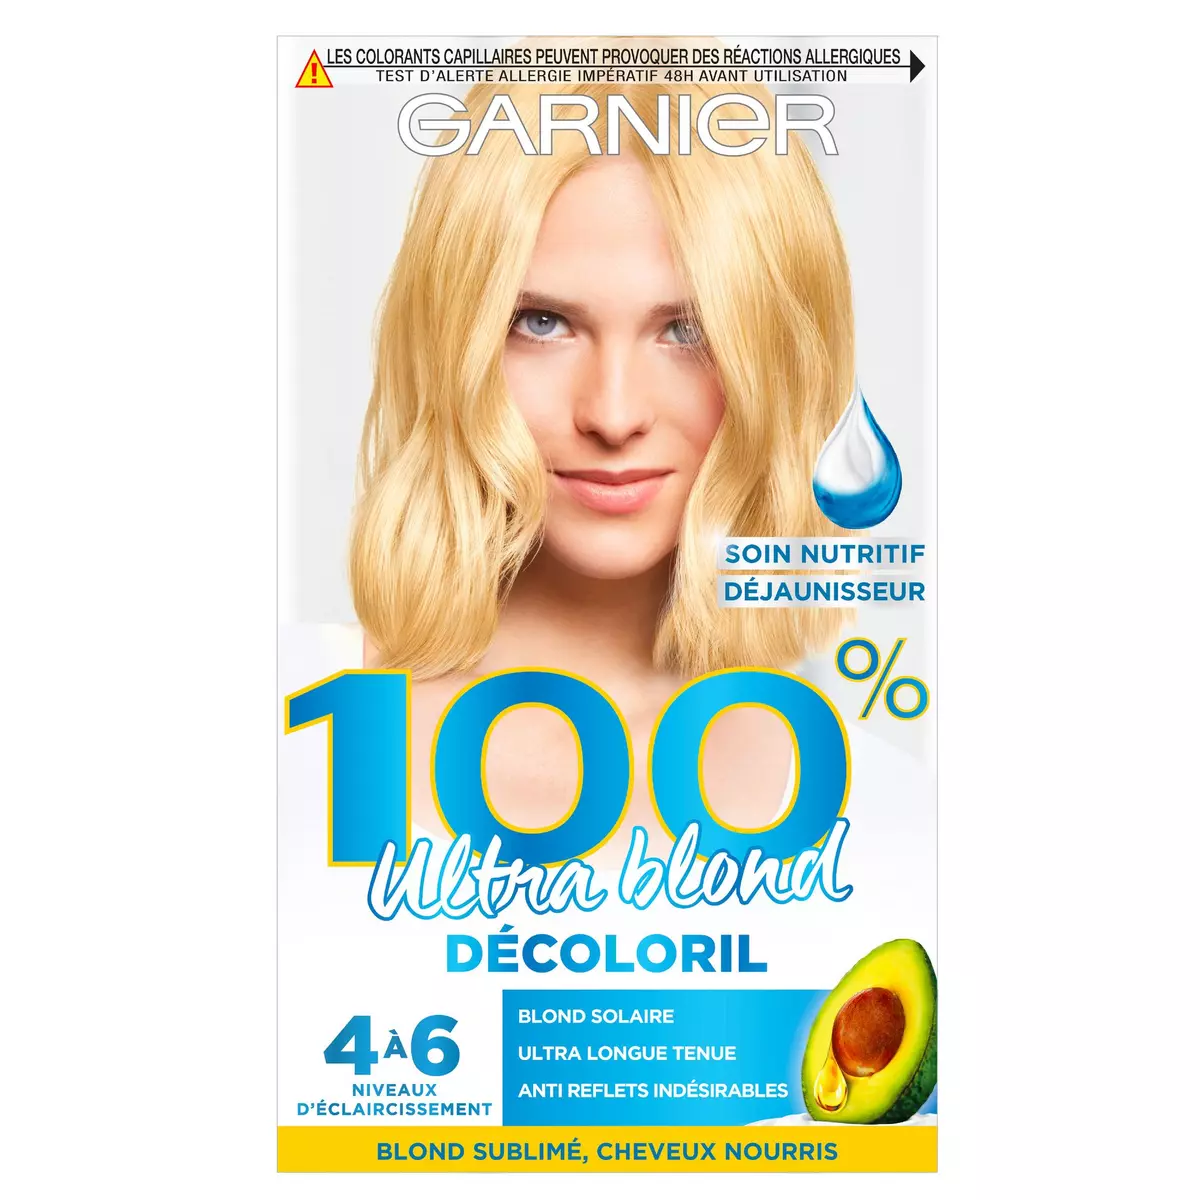 GARNIER 100% ultra blond décolorant sans ammoniaque 1 kit